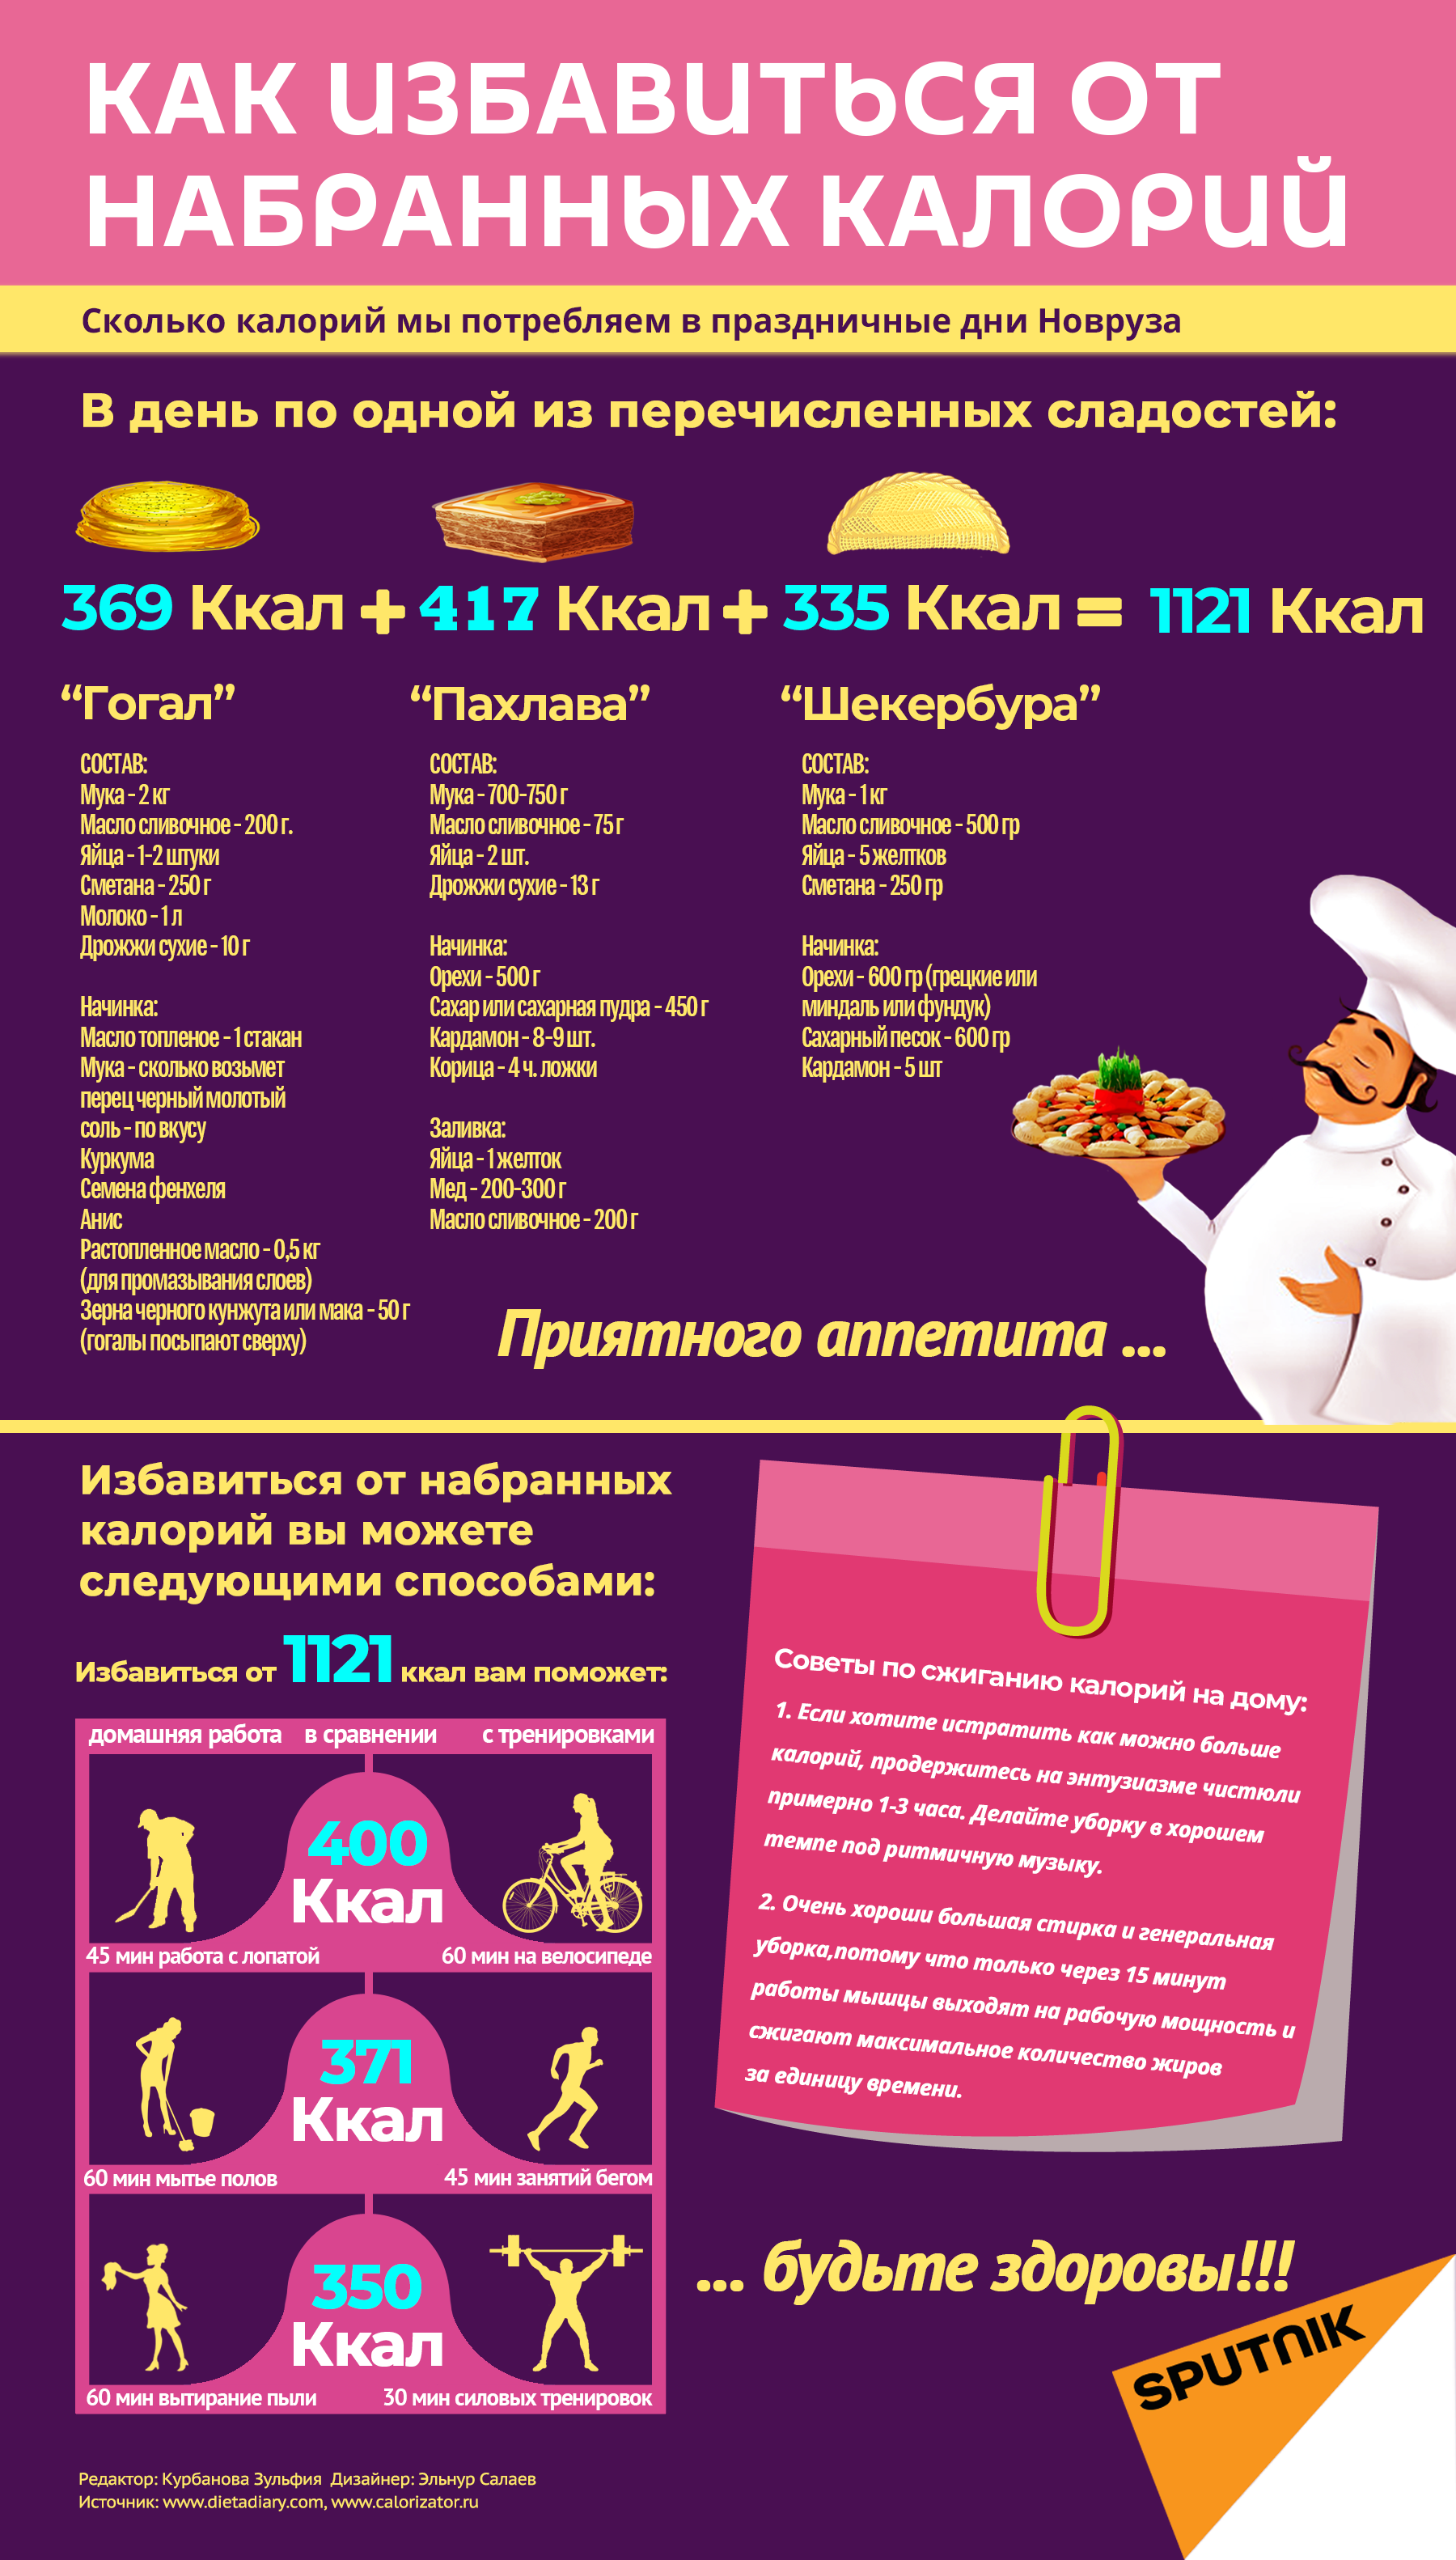 Инфографика: Как избавиться от набранных калорий - Sputnik Азербайджан, 1920, 26.03.2021